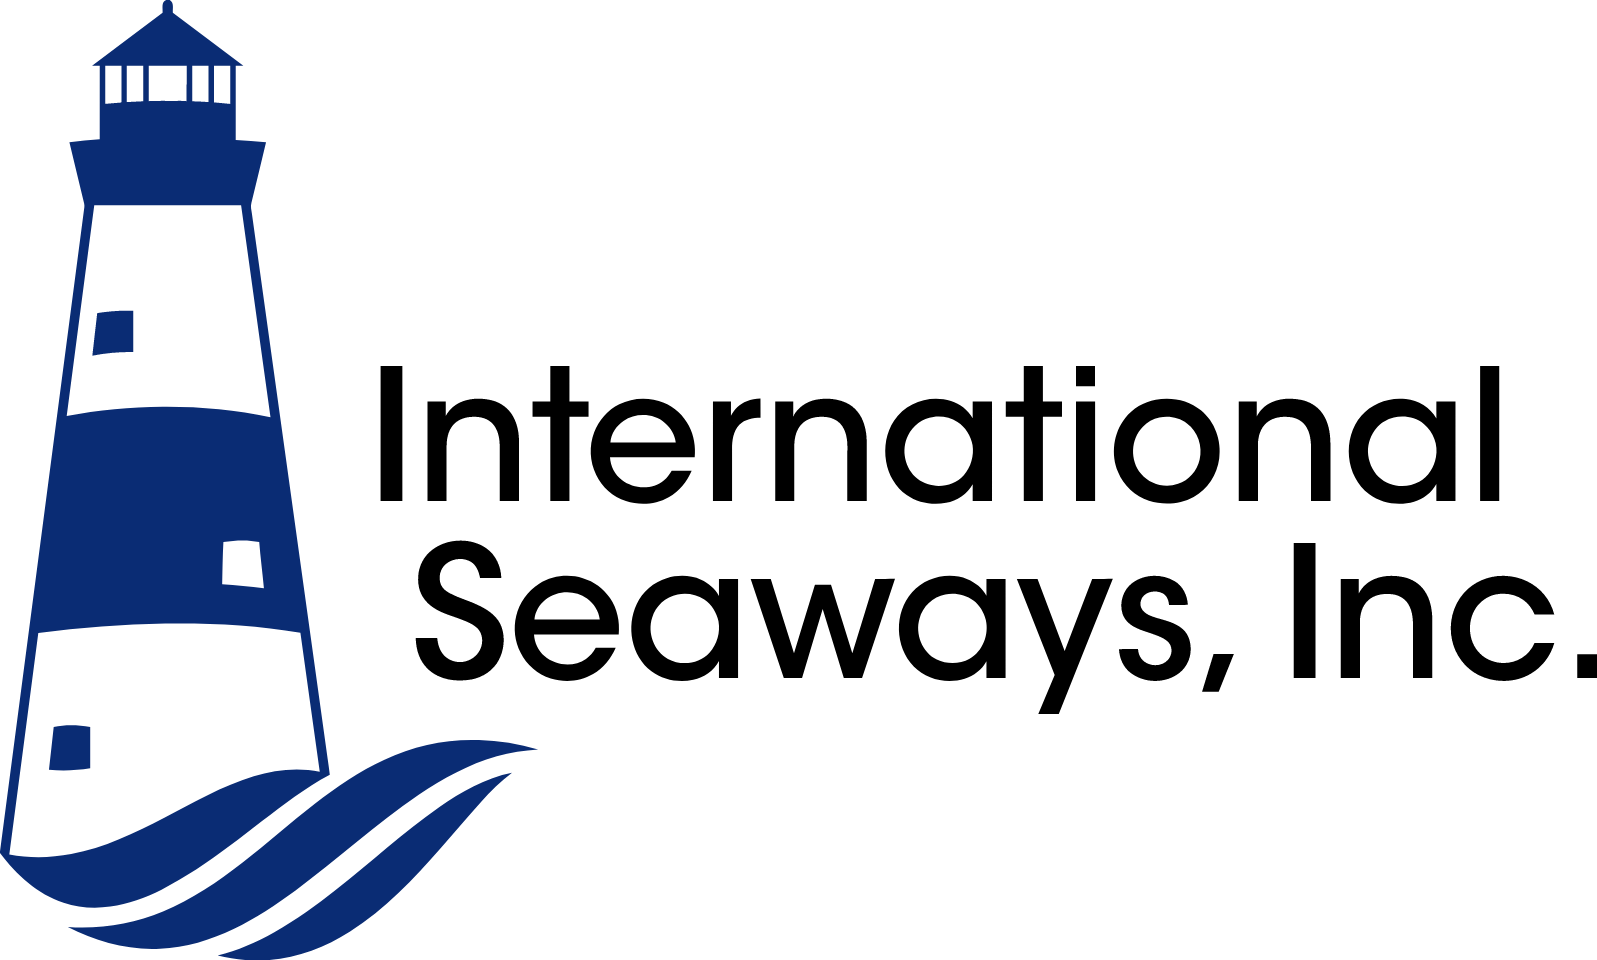 International Seaways logo large (transparent PNG)